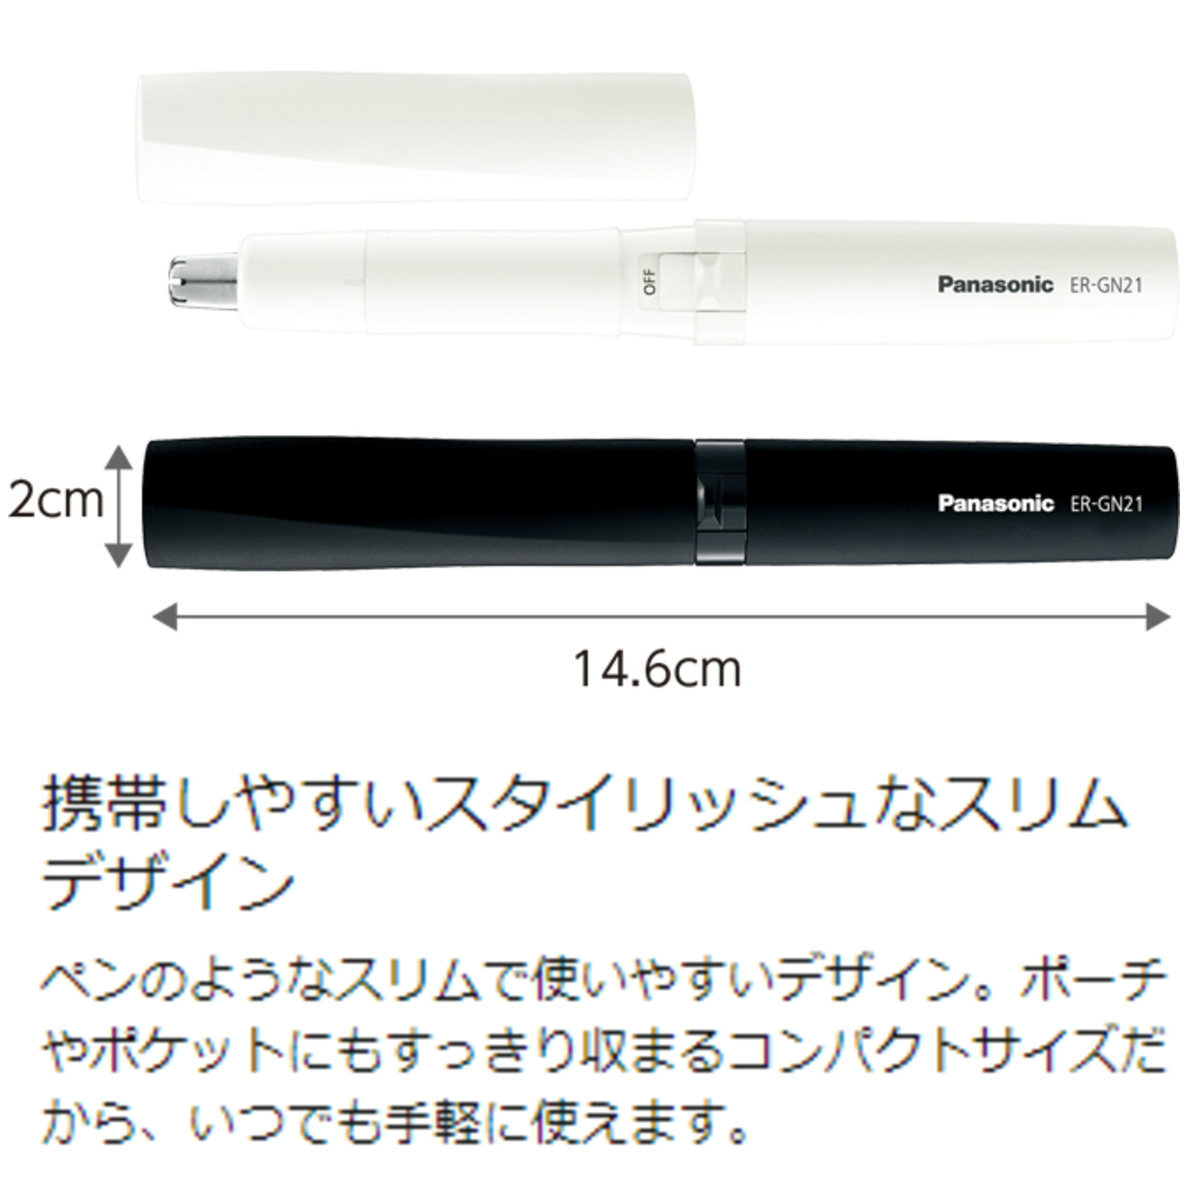 741円 驚きの安さ Panasonic パナソニック エチケットカッター 黒 ER-GN21-K 鼻毛カッター